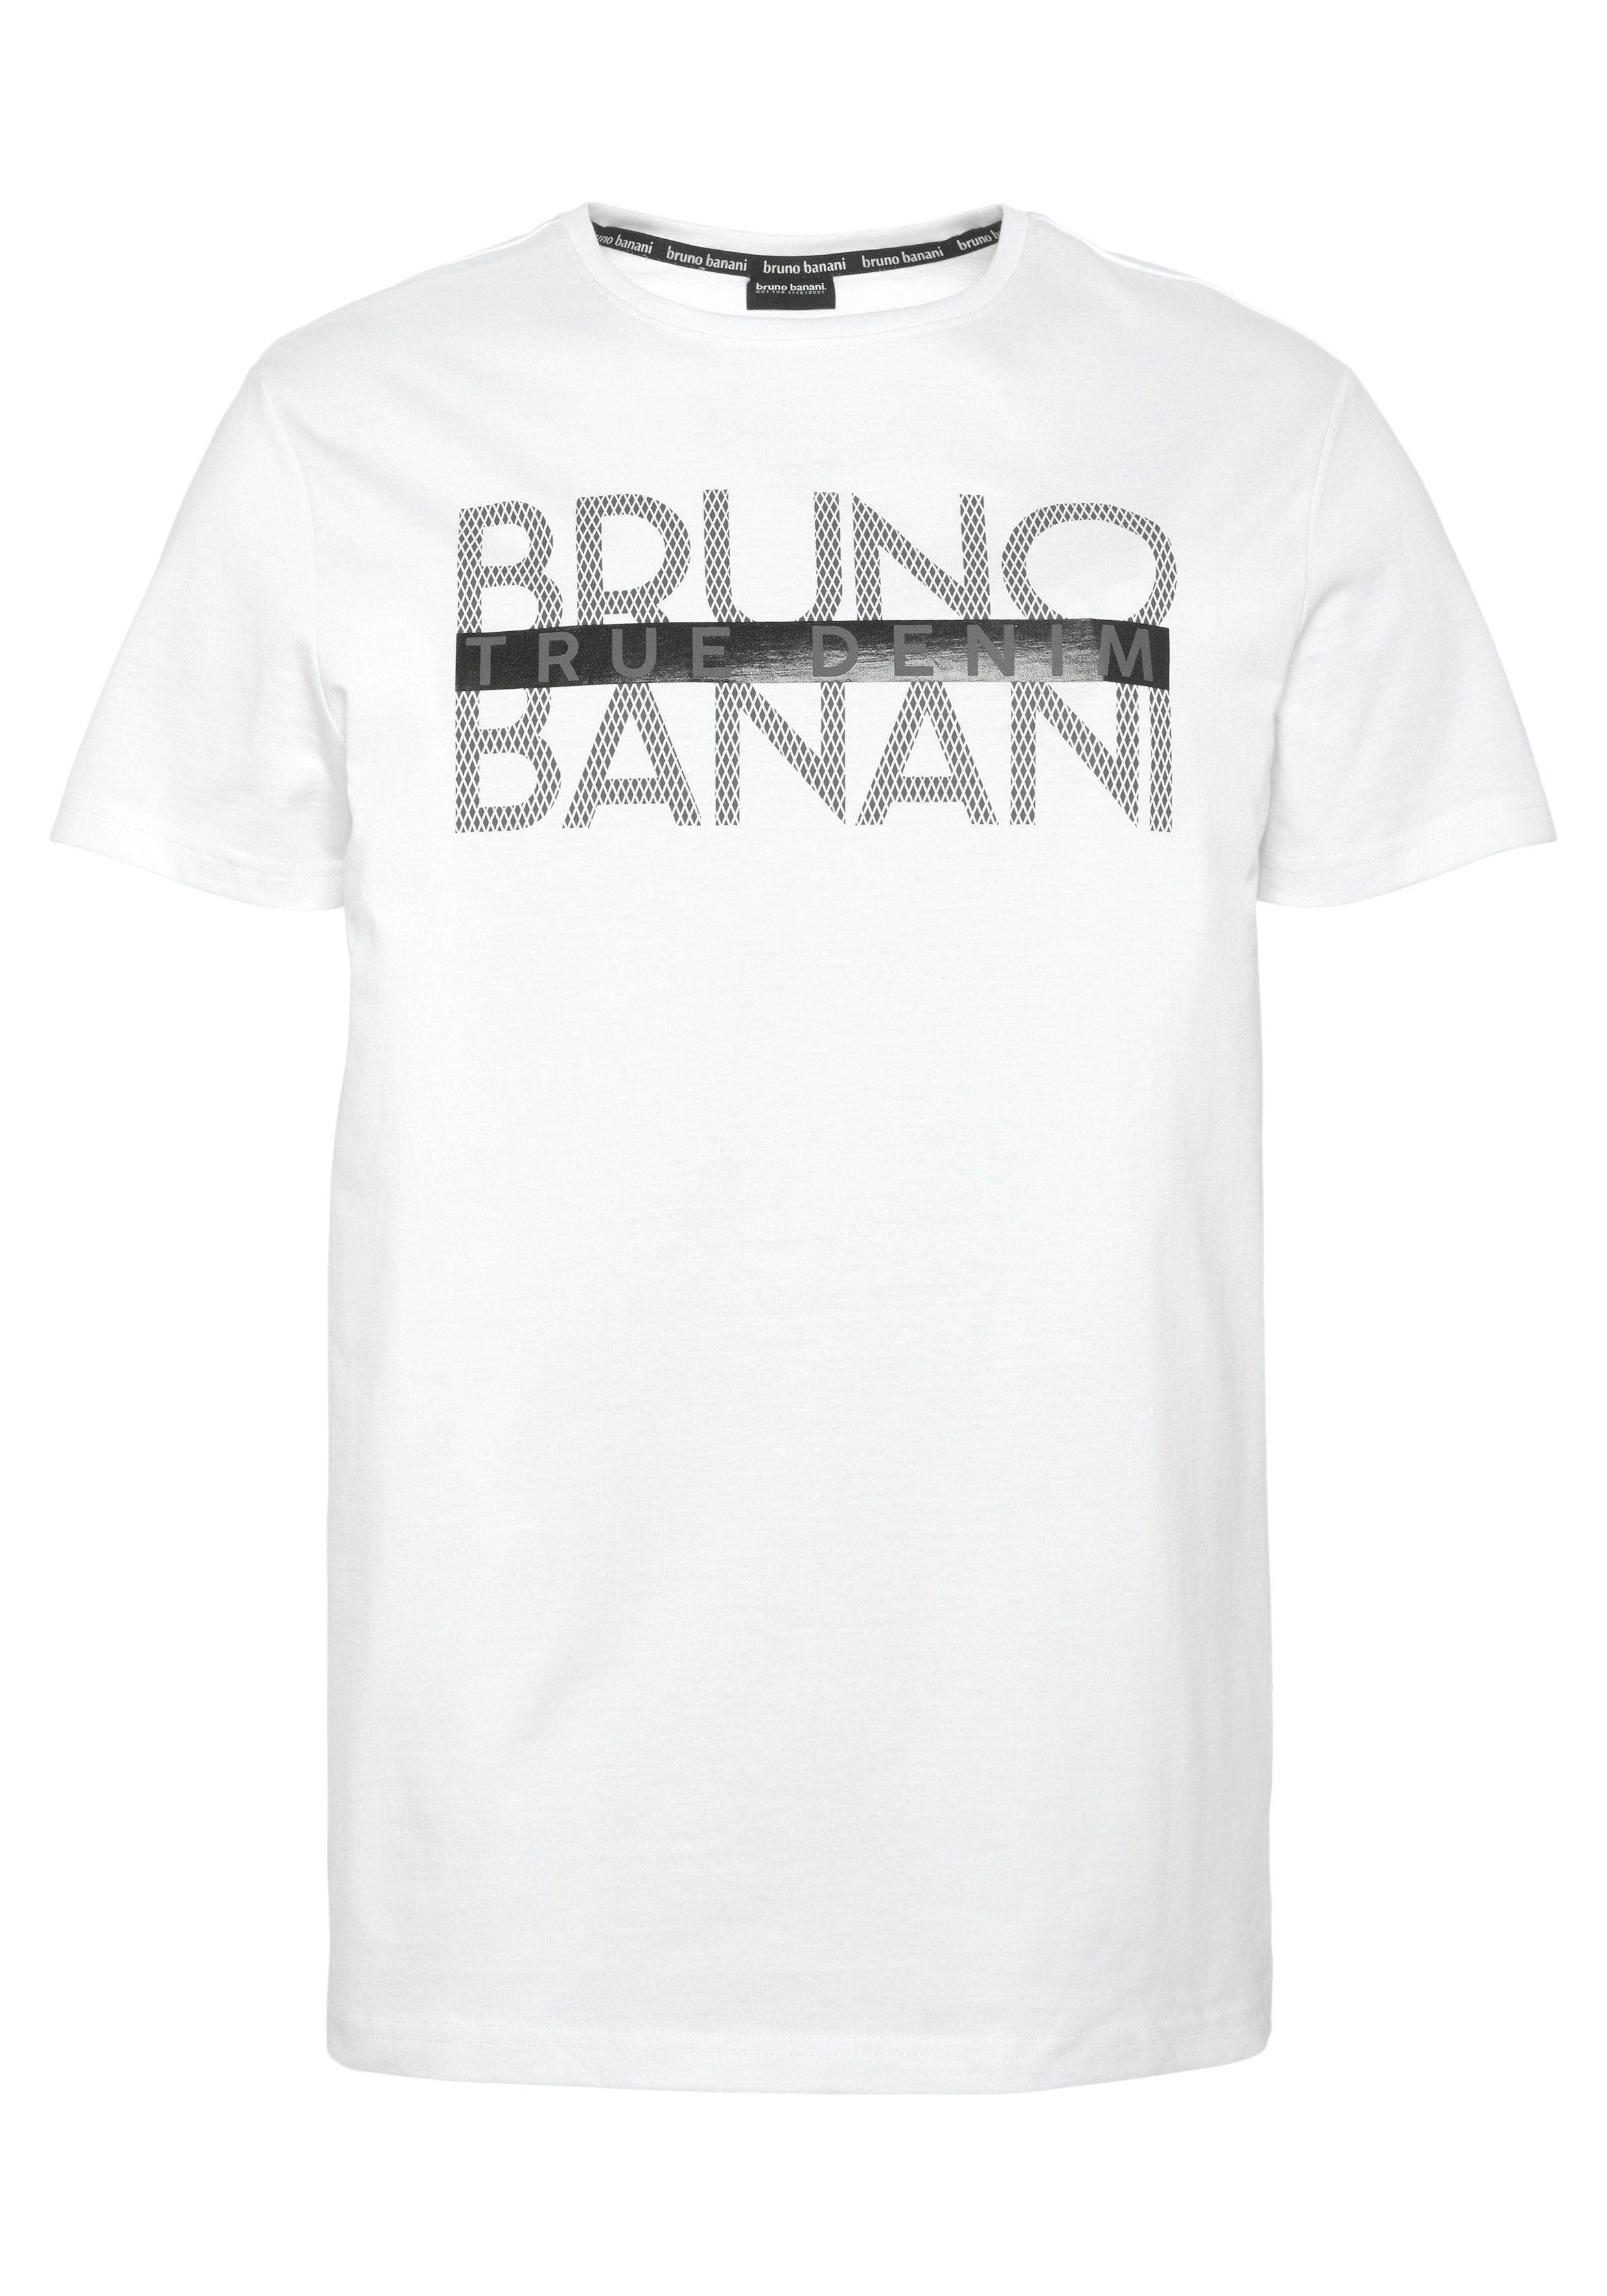 T-Shirt glänzendem Print mit weiß Bruno Banani